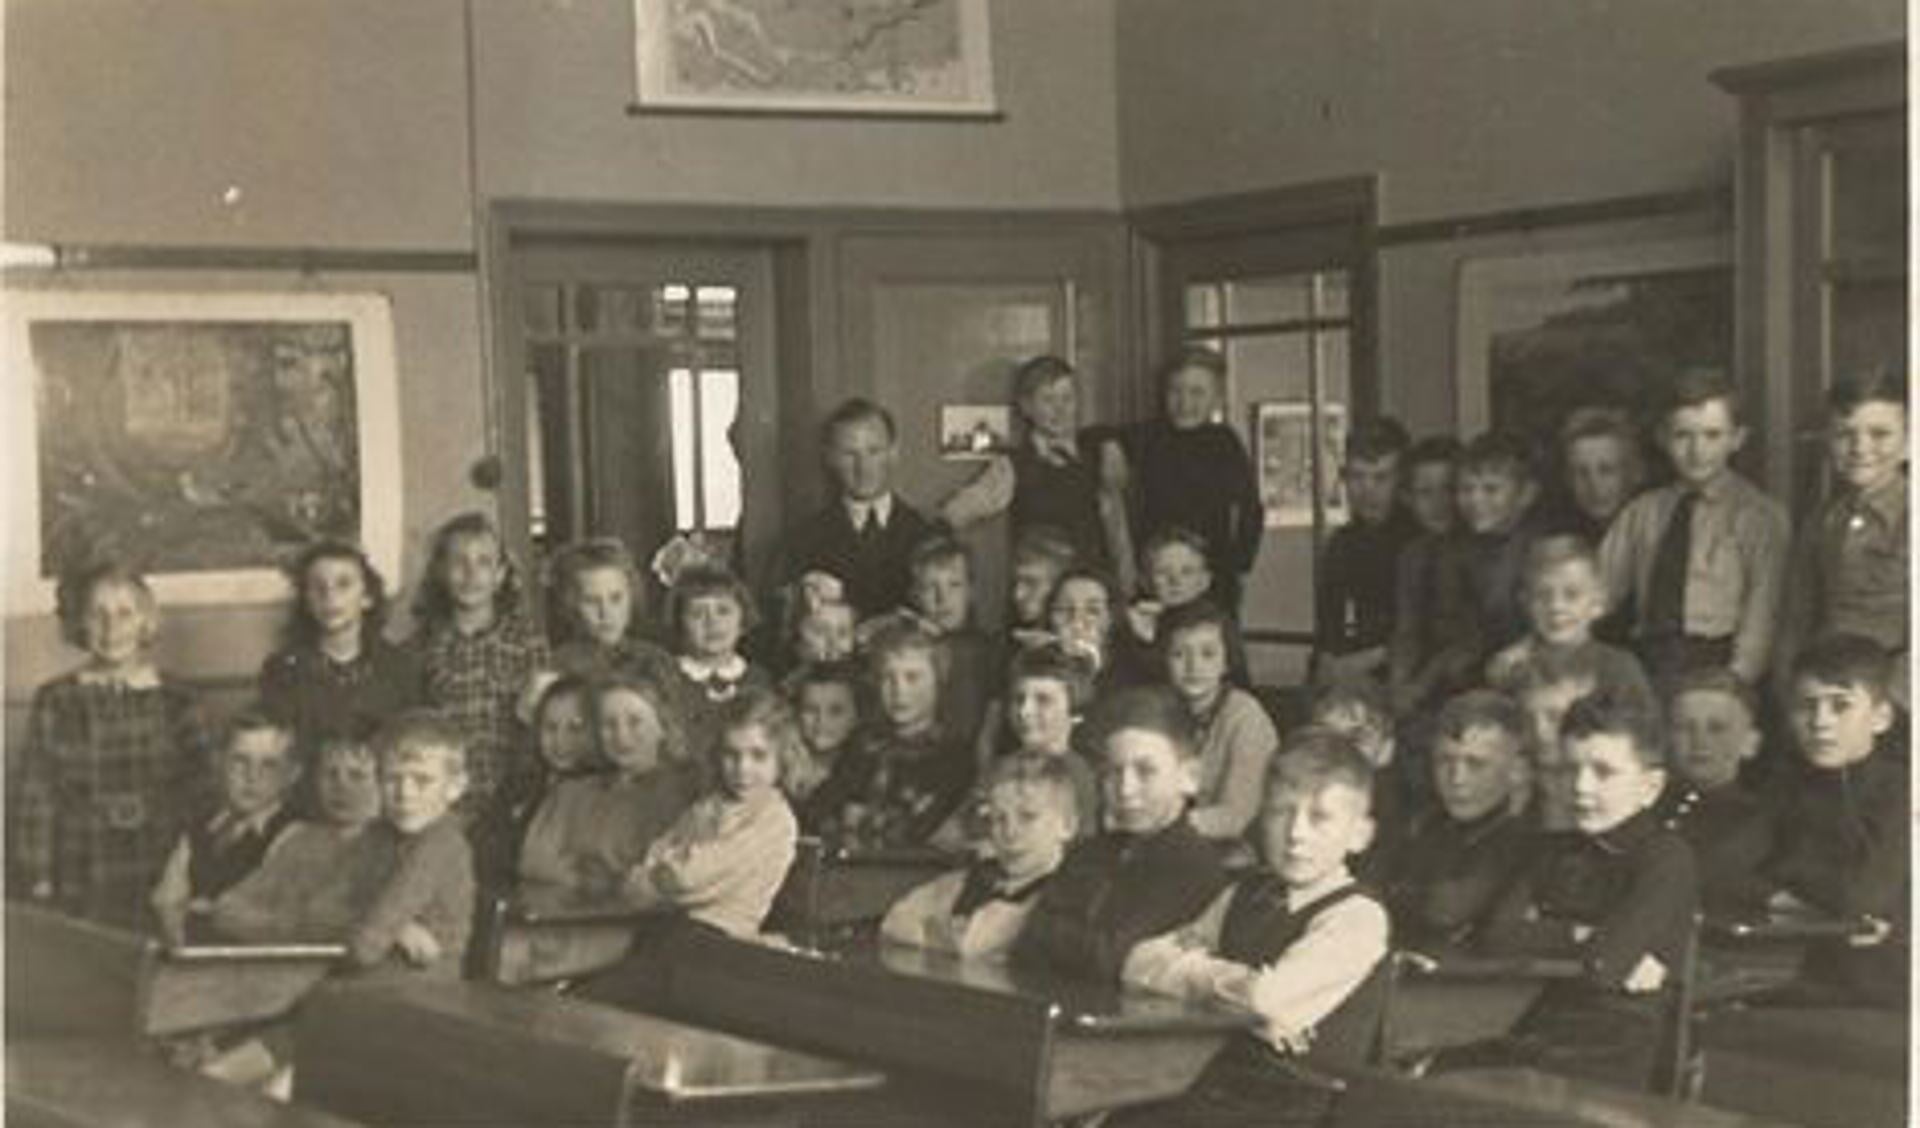 Schoolfoto van de 3e en 4e klas van de school van meester Vermeer, genomen in 1947